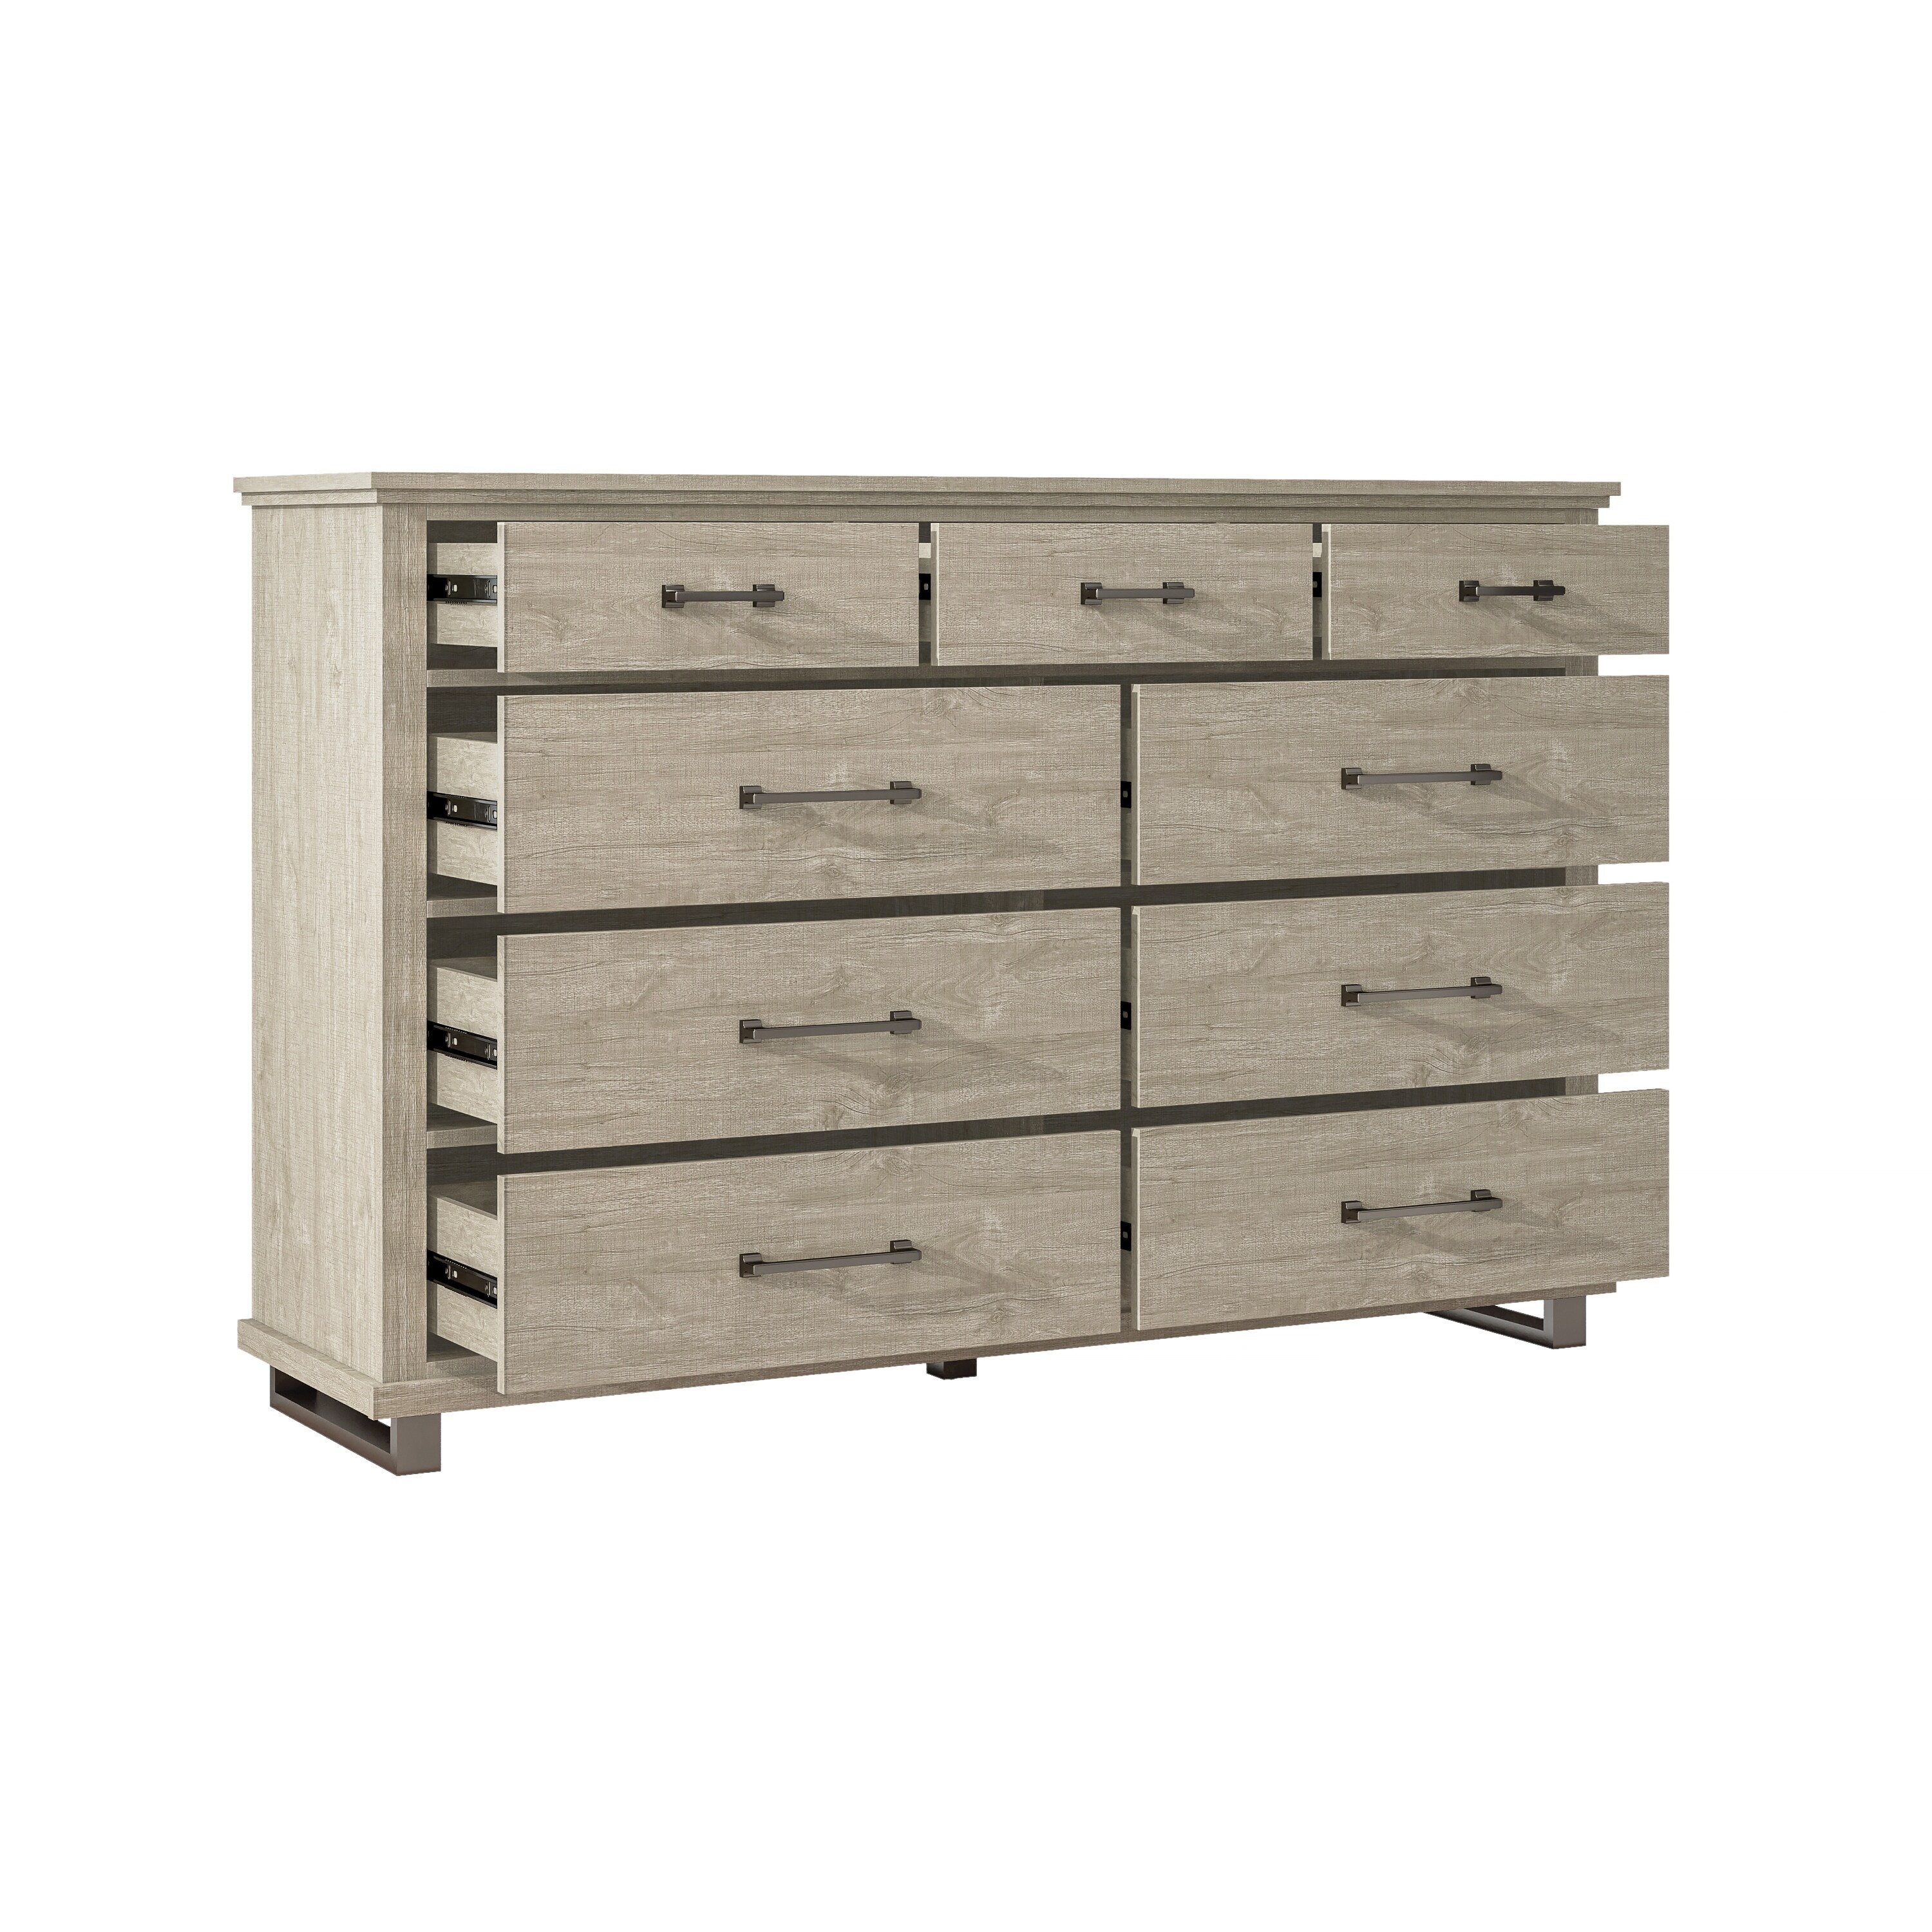 Latitude Run® Sussie 9 Drawer Chest, Wood Storage Dresser Cabinet